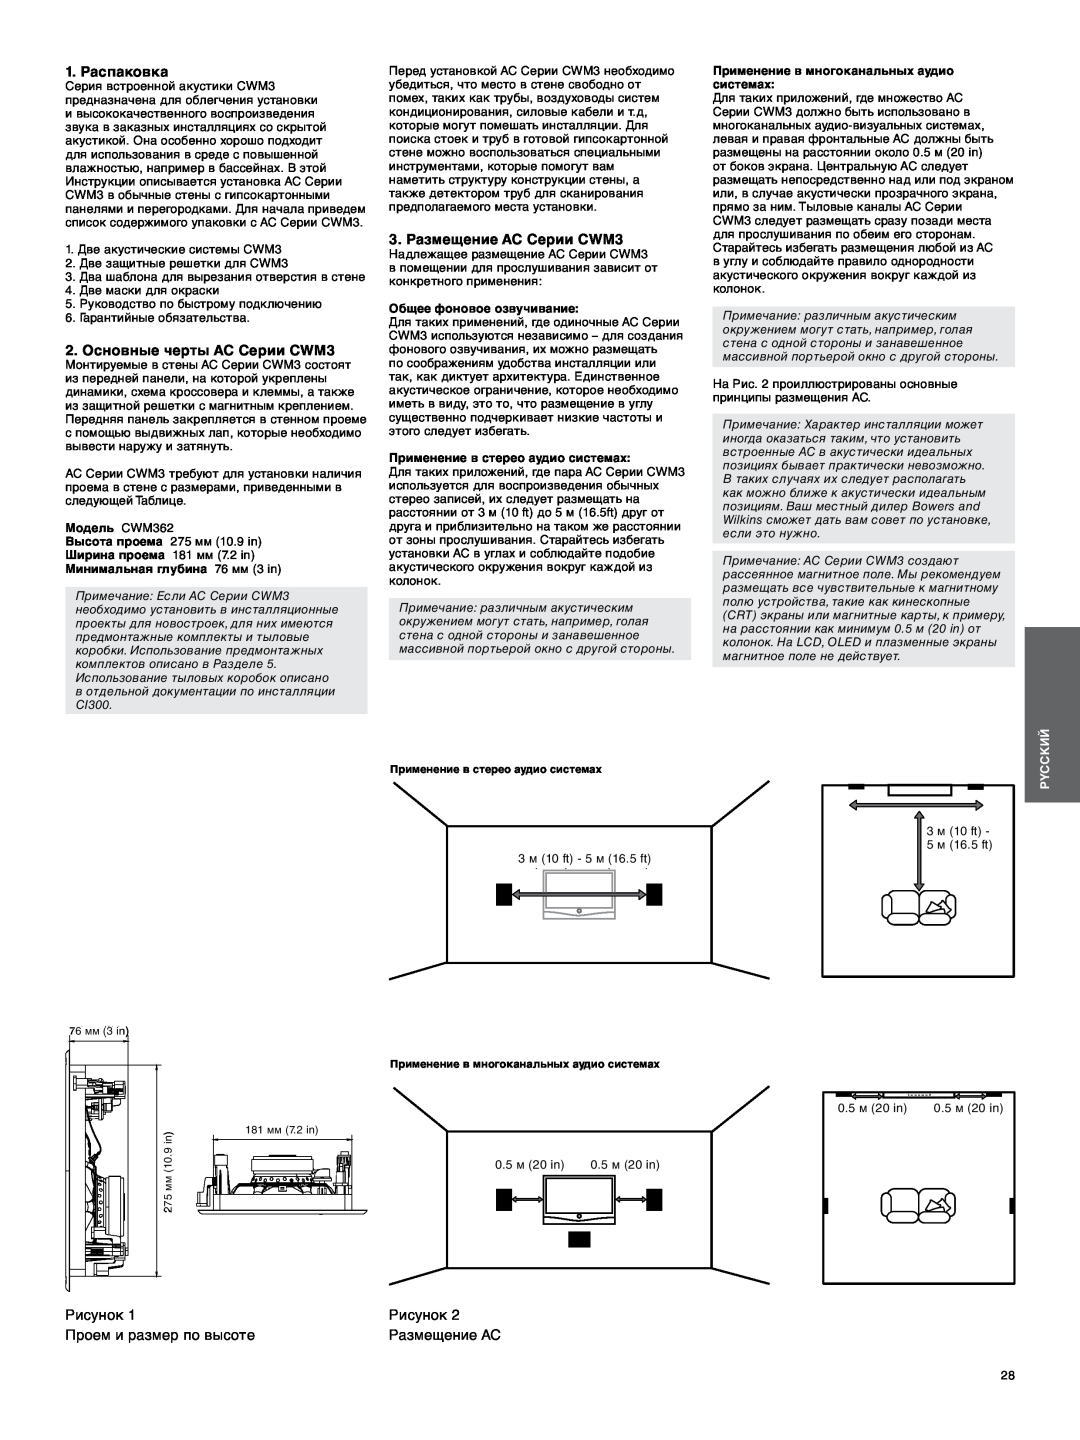 Bowers & Wilkins manual 1. Распаковка, 2. Основные черты АС Серии CWM3, 3. Размещение АС Серии CWM3, 3m 10ft, 5m 16.5ft 